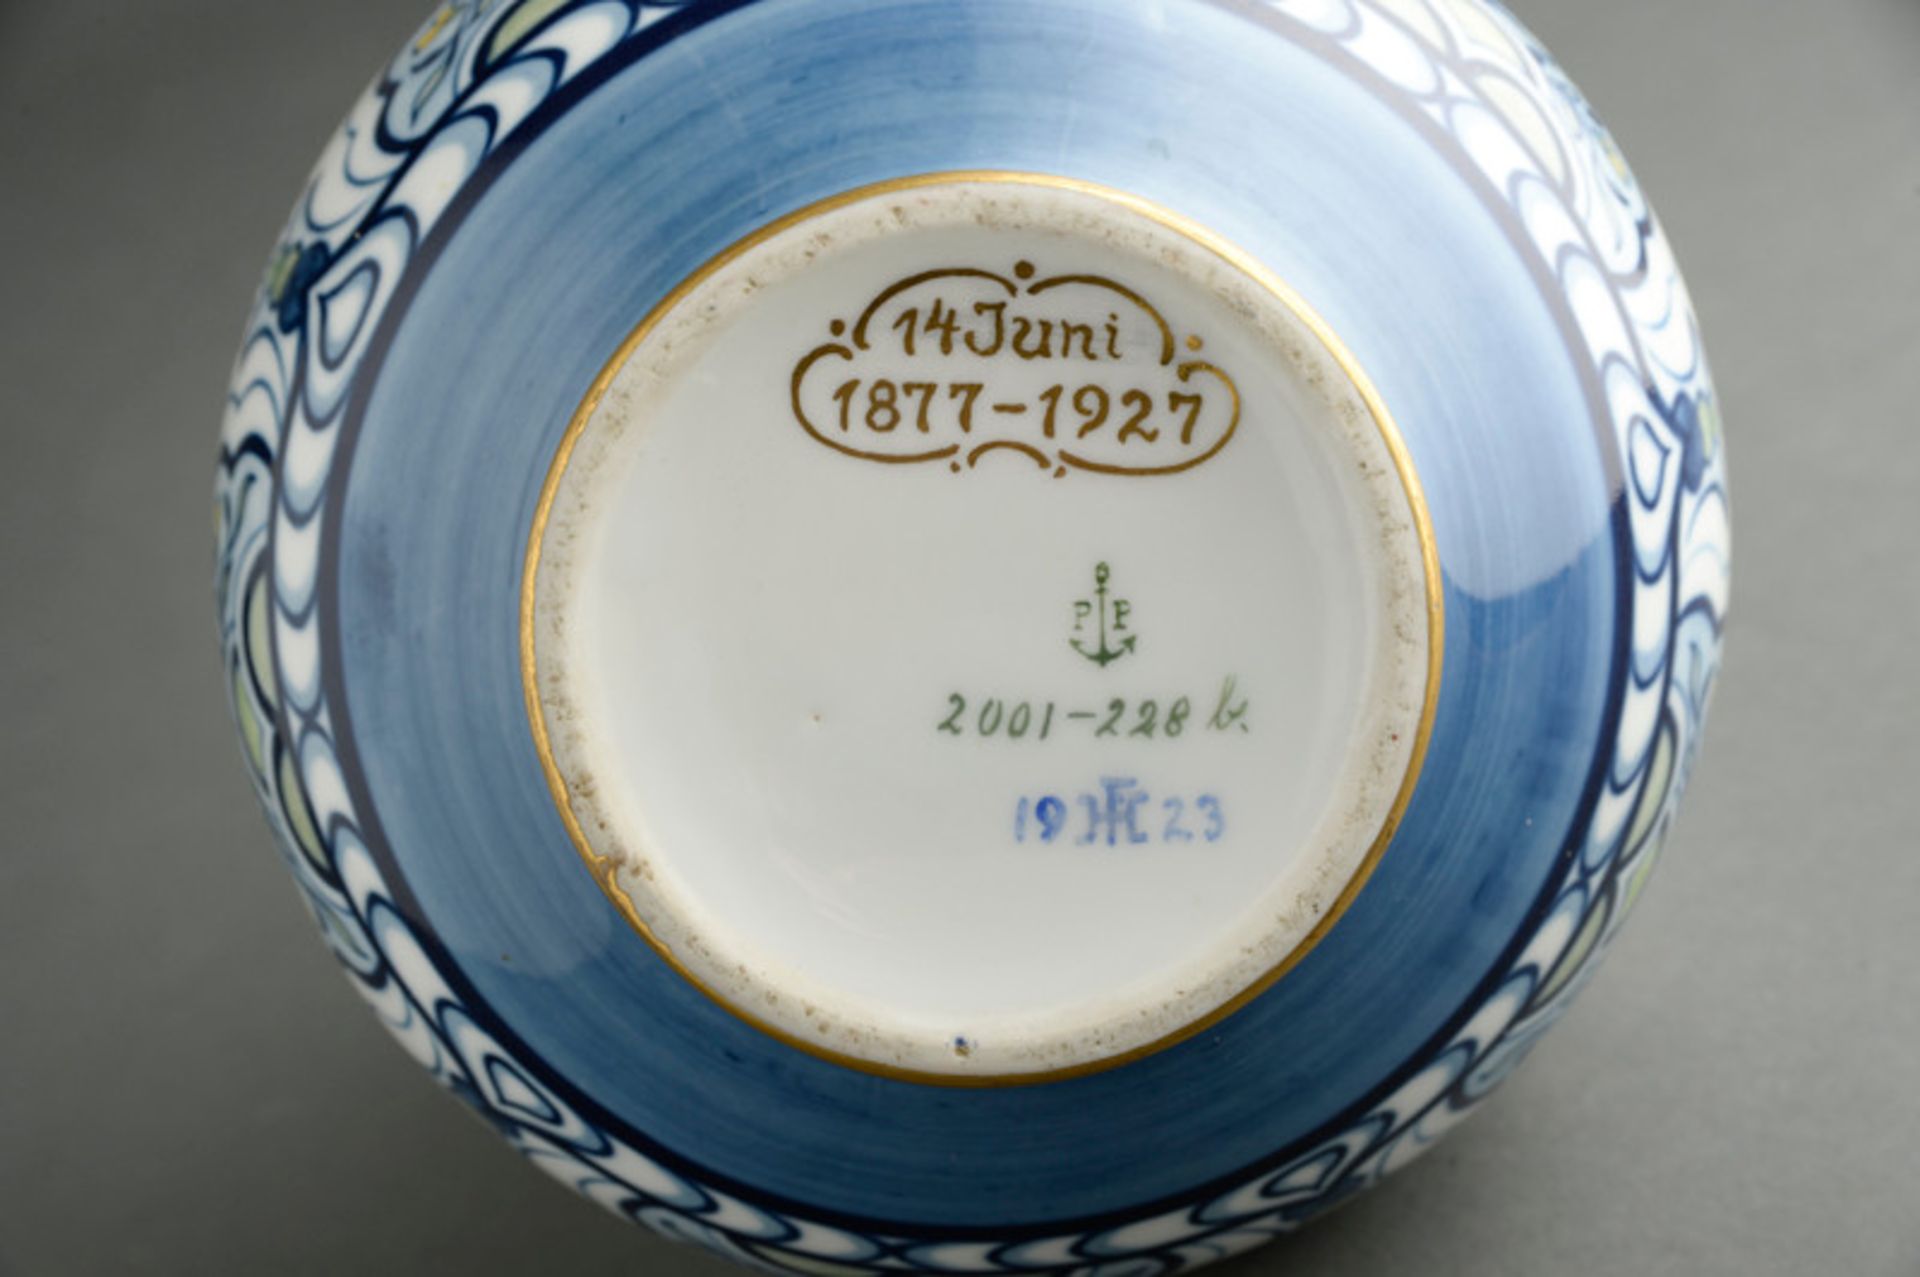 Art-Deco Vase der Porzellanfabrik Porsgrunds, Norwegen, 1923im Boden signiert "19 HF 23", limitierte - Bild 2 aus 2